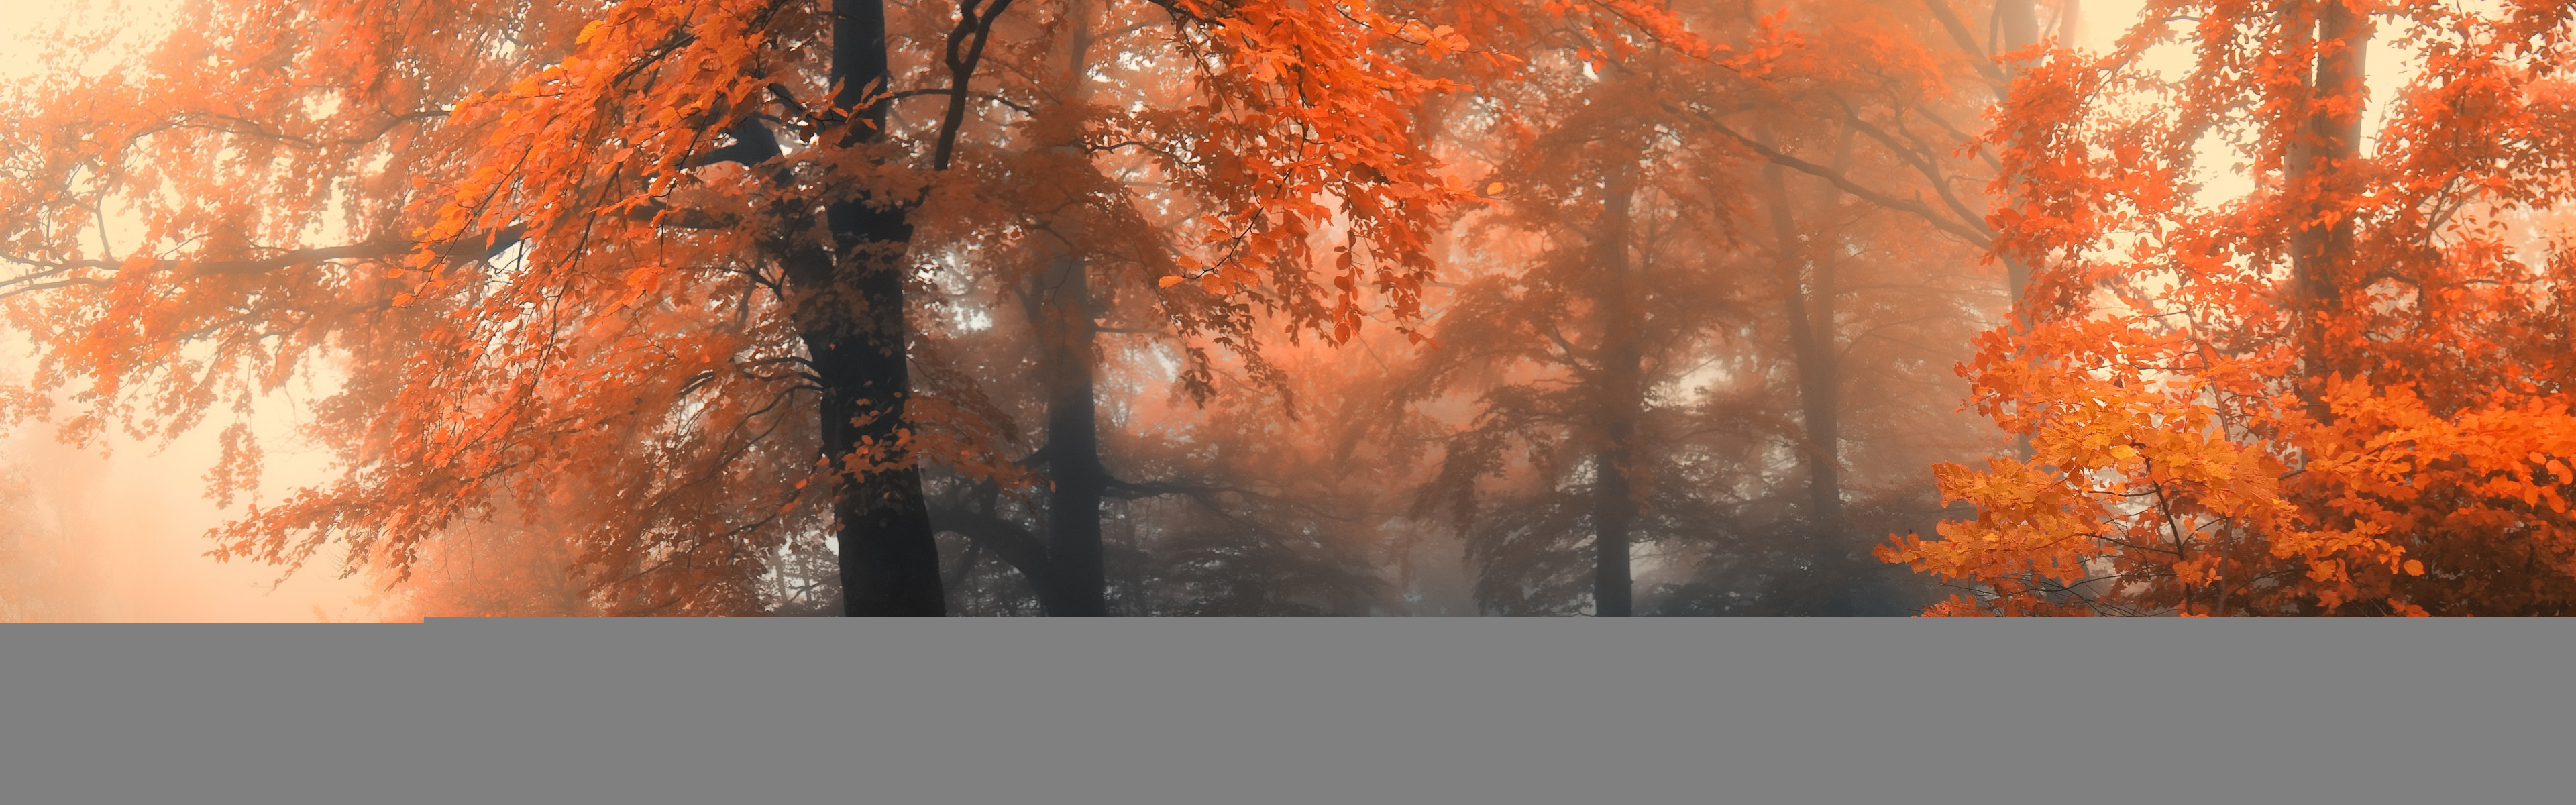 3840x1200 1545 1: Autumn iPhone Panoramic wallpaper